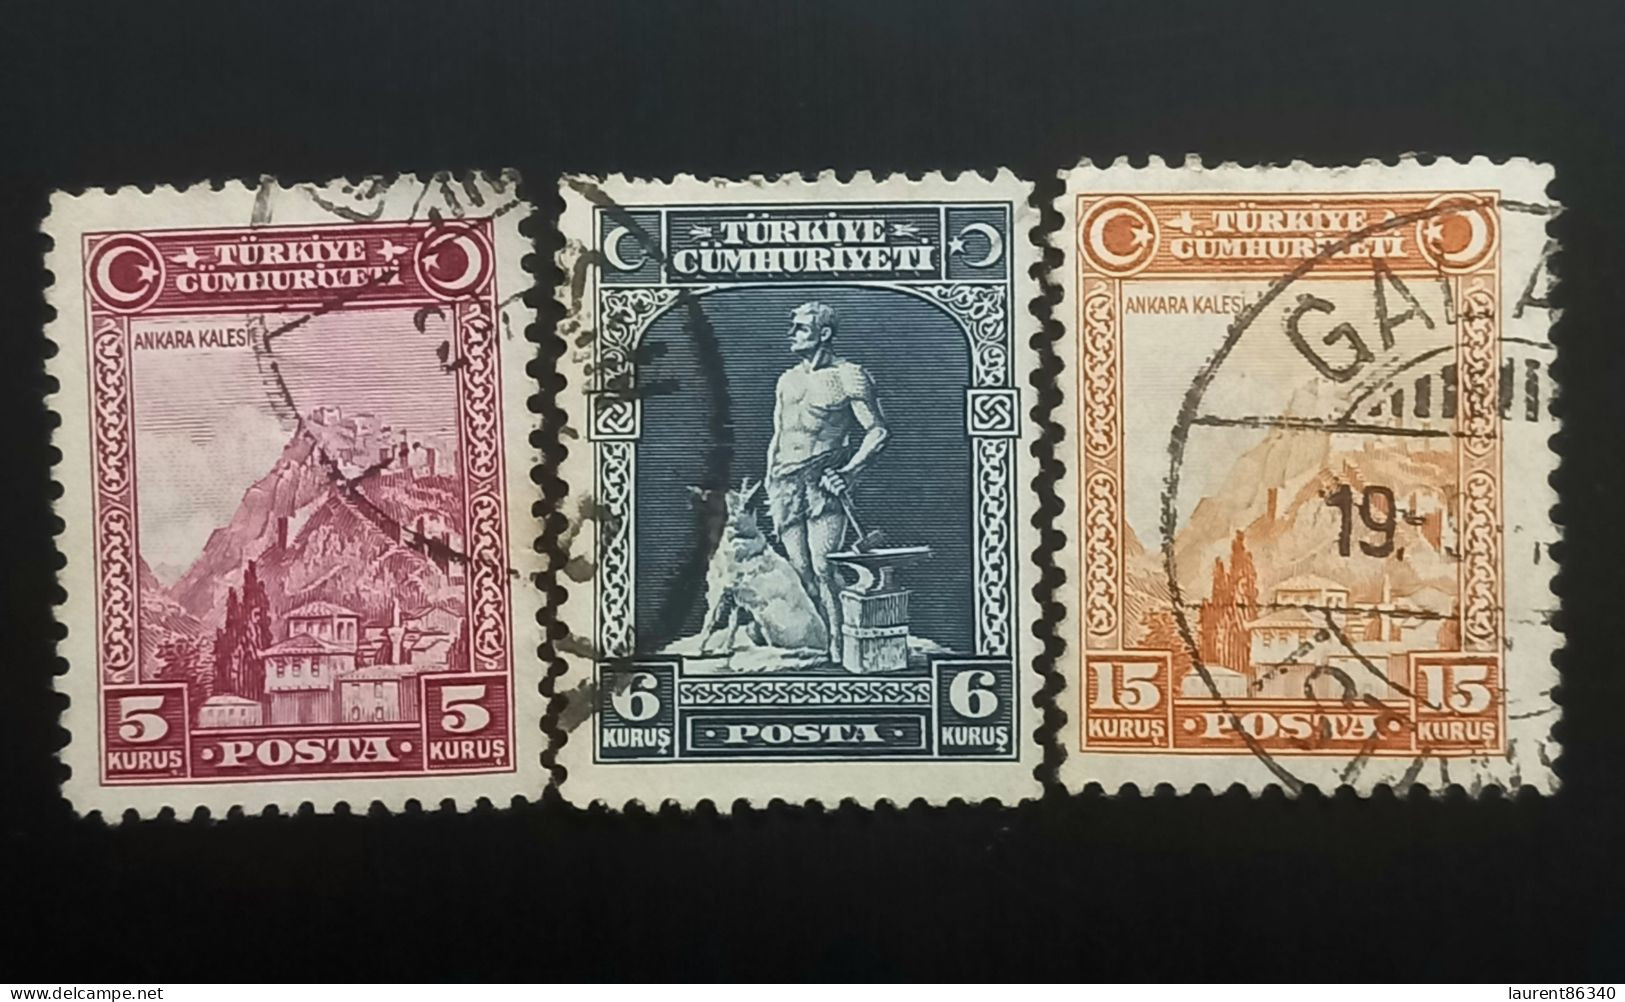 TURQUIE 1930 Inscription "TÜRKIYE CÜMHURIYETI" - "Ü" In "CÜMHURIYETI" 3 Used Stamps - Gebruikt